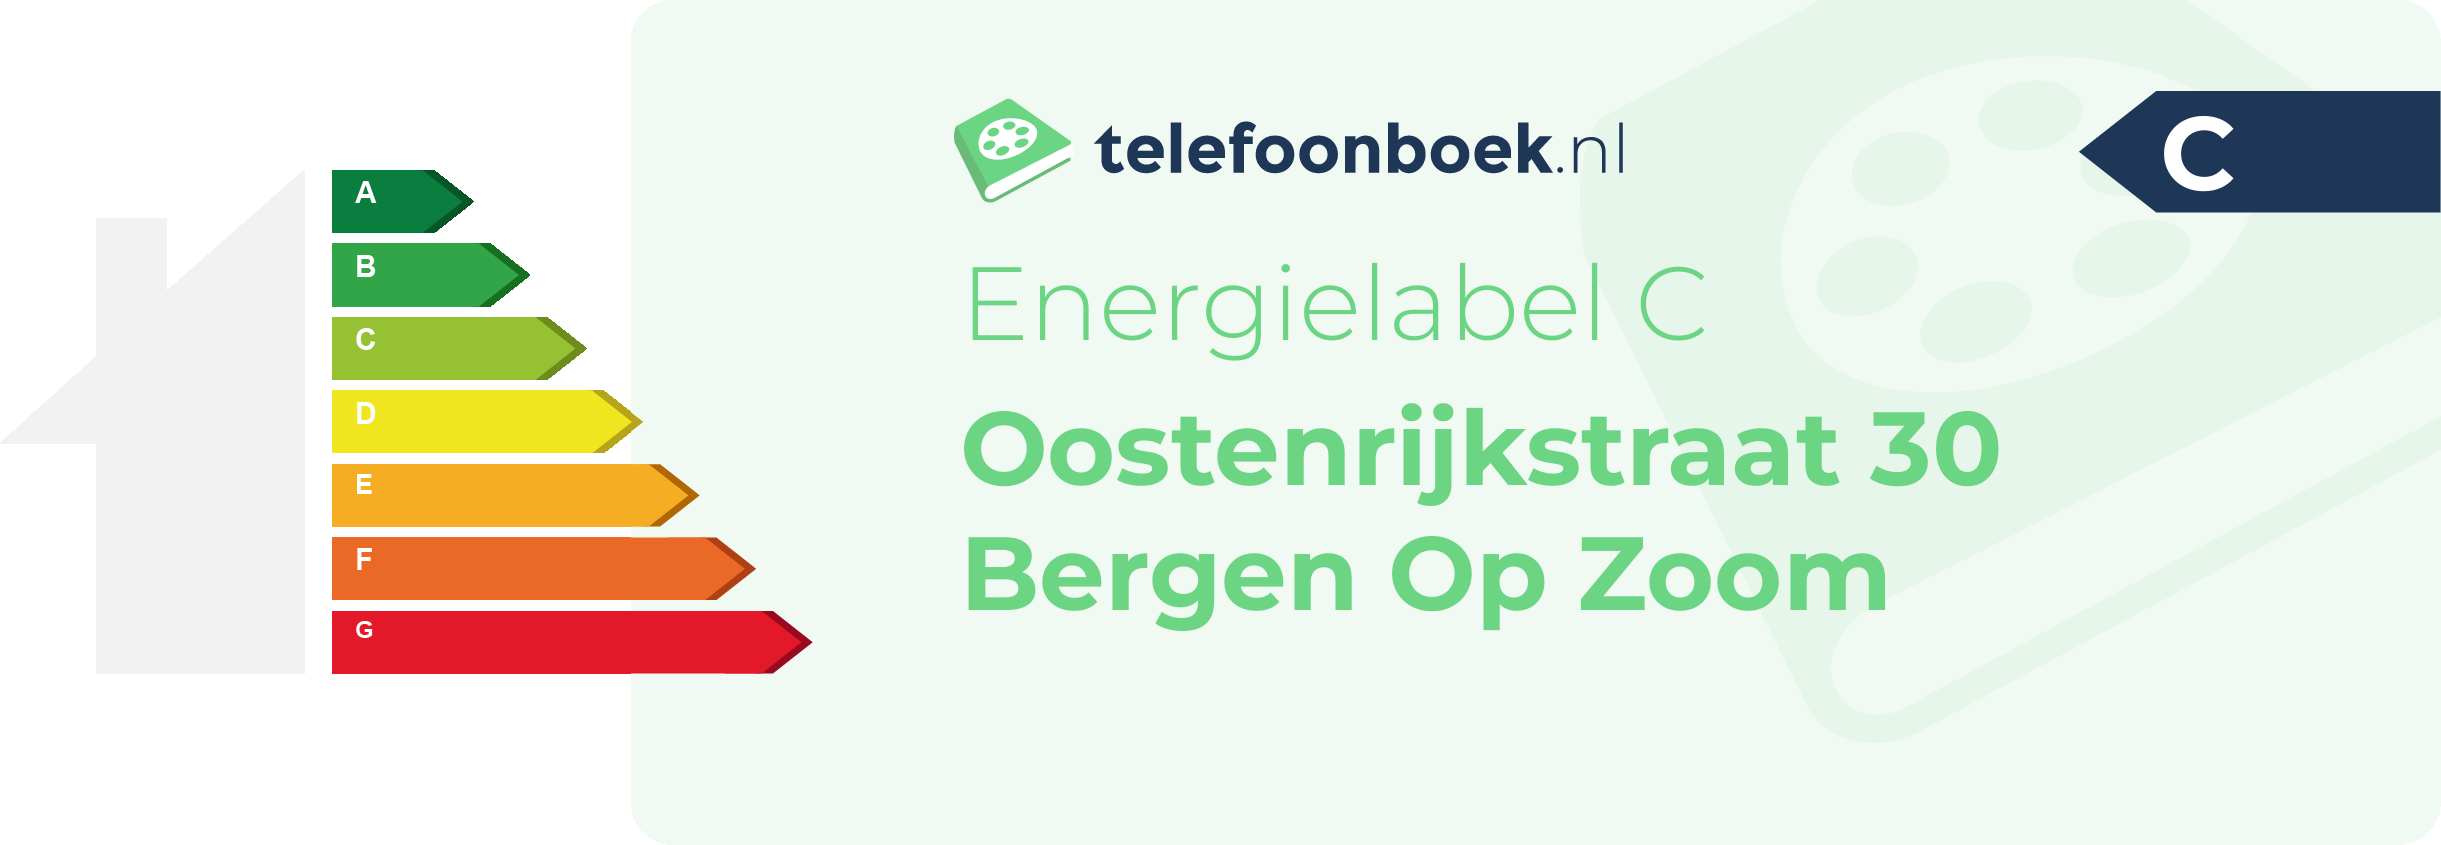 Energielabel Oostenrijkstraat 30 Bergen Op Zoom